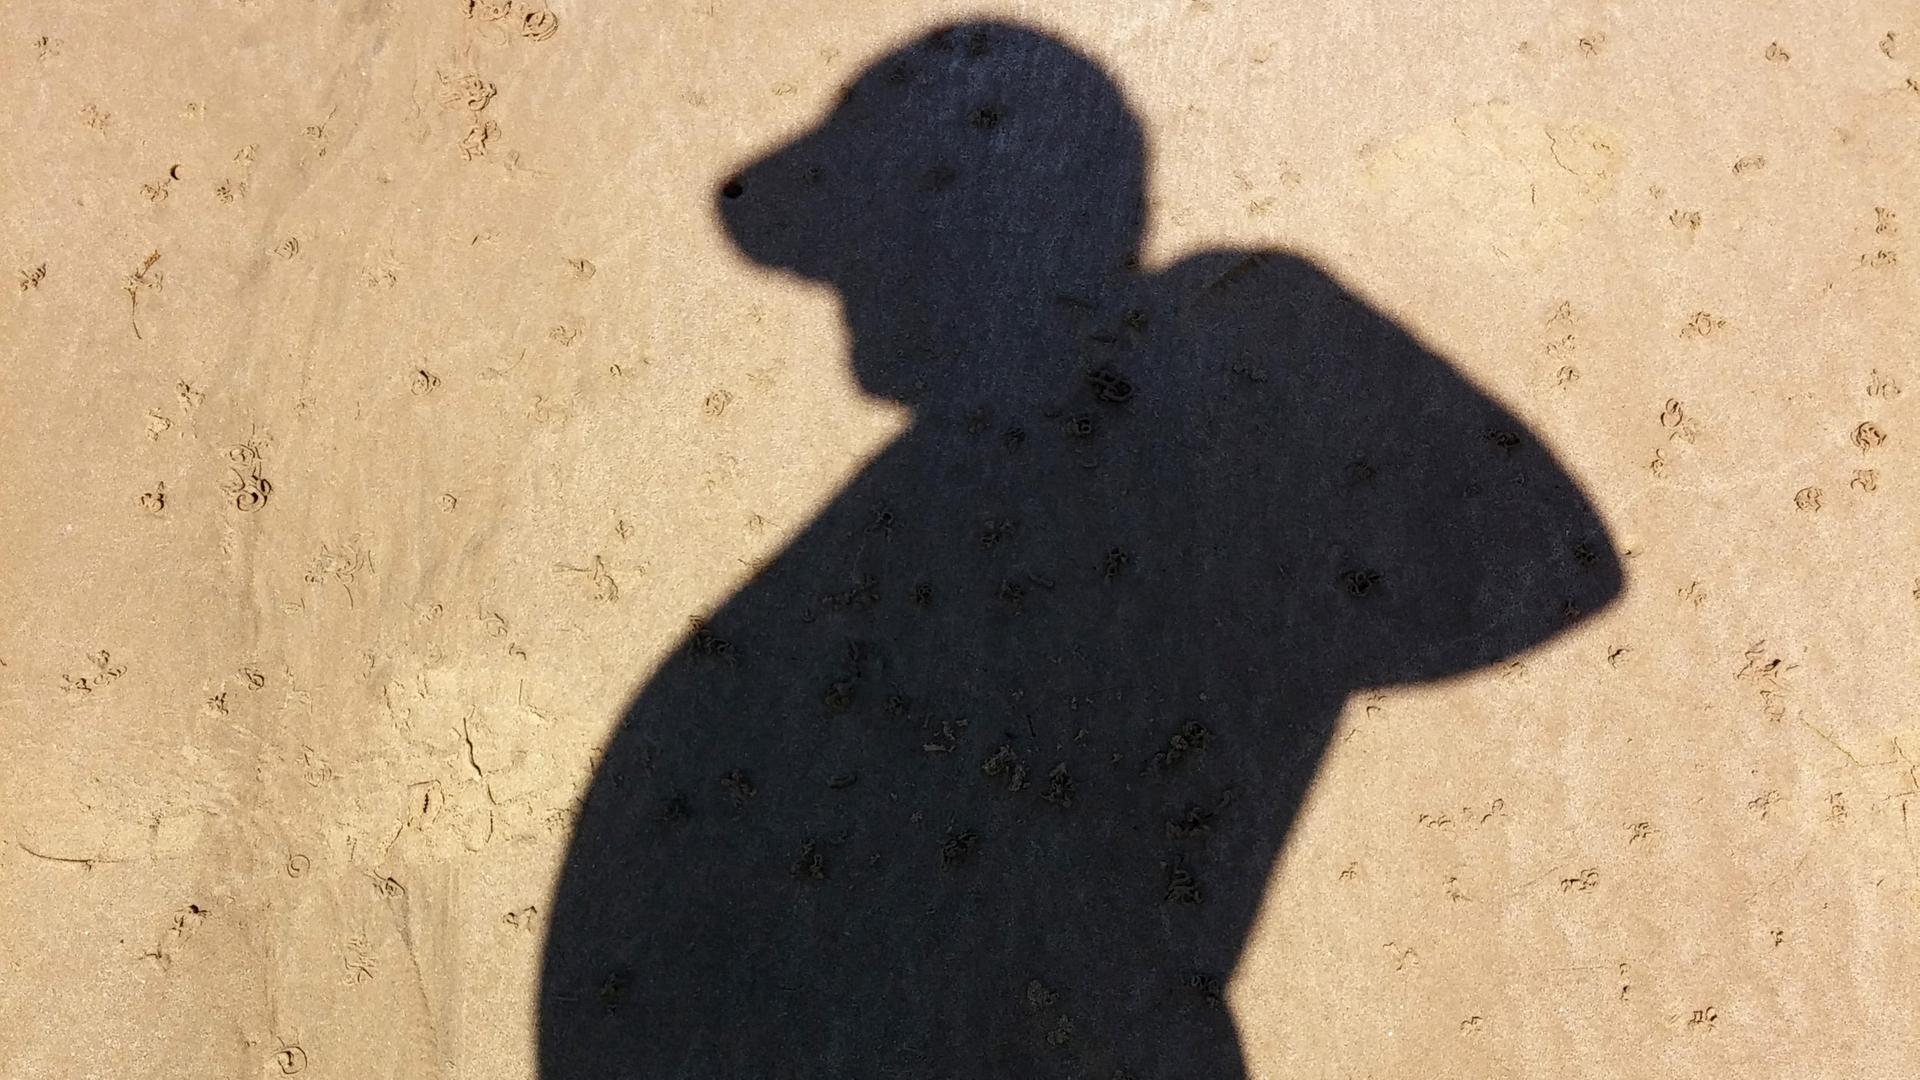 Schatten eines dicken Mannes am Sandstrand.